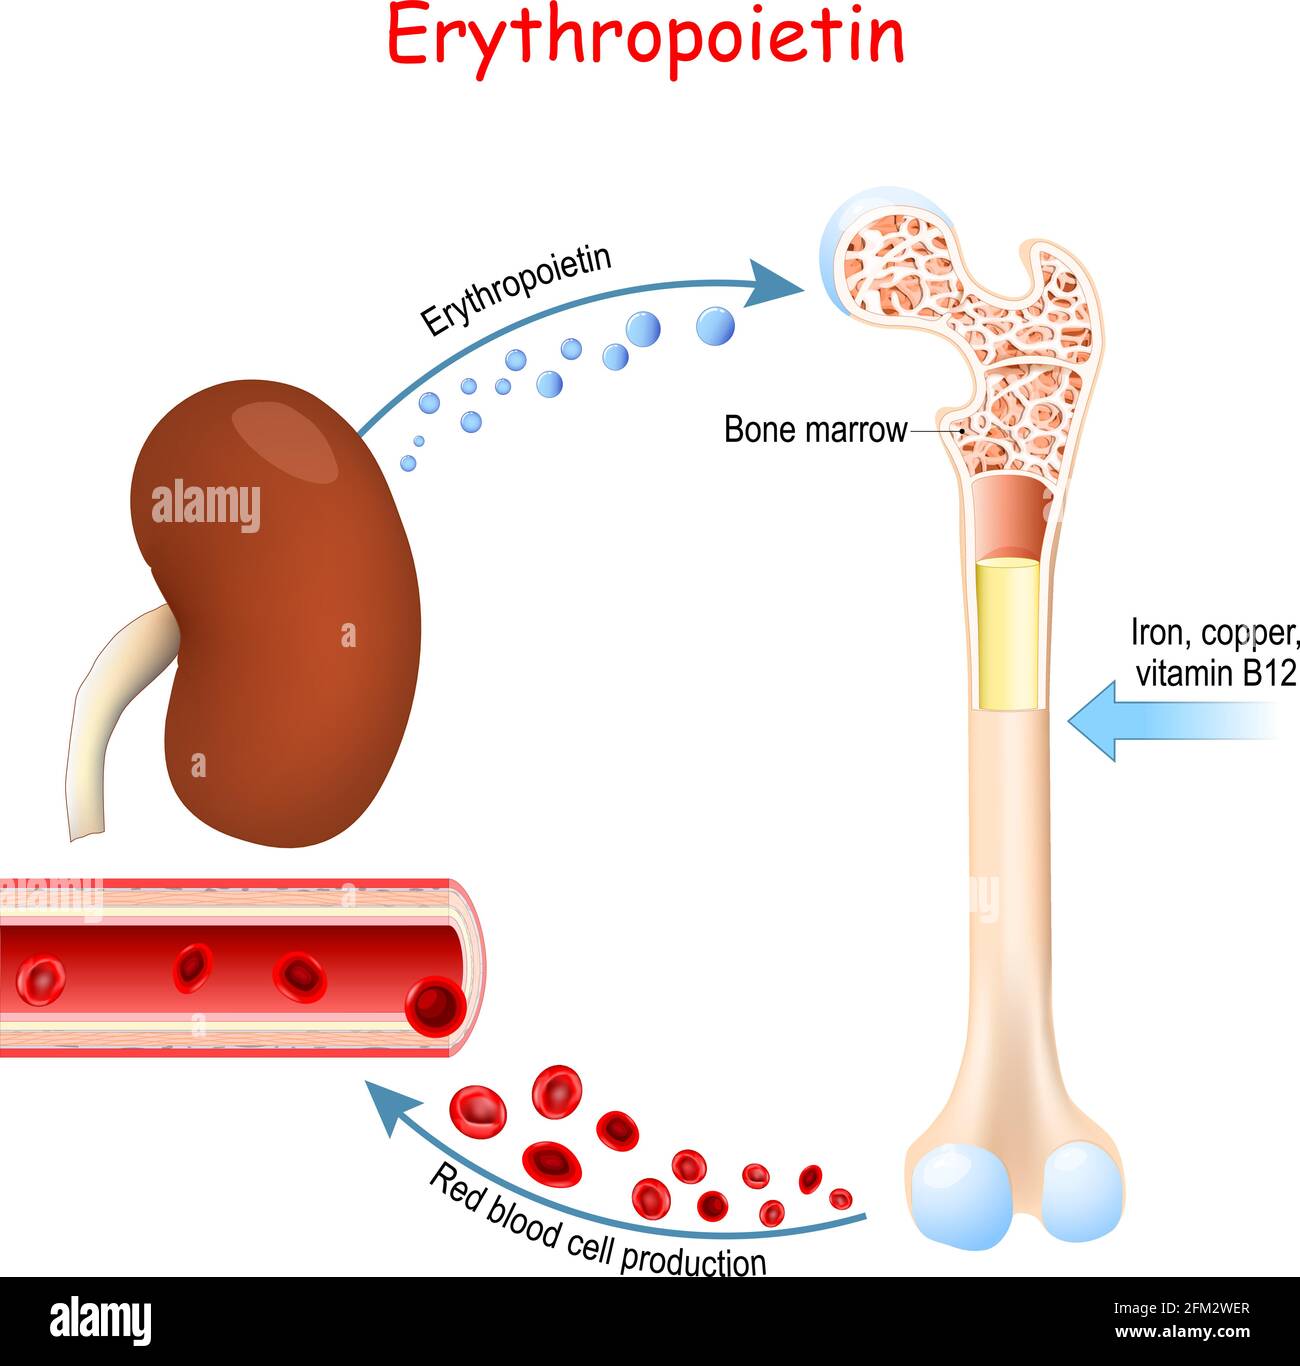 Érythropoïétine. Glycoprotéine cytokine sécrétée par le rein en réponse à l'hypoxie cellulaire qui stimule la production de globules rouges Illustration de Vecteur